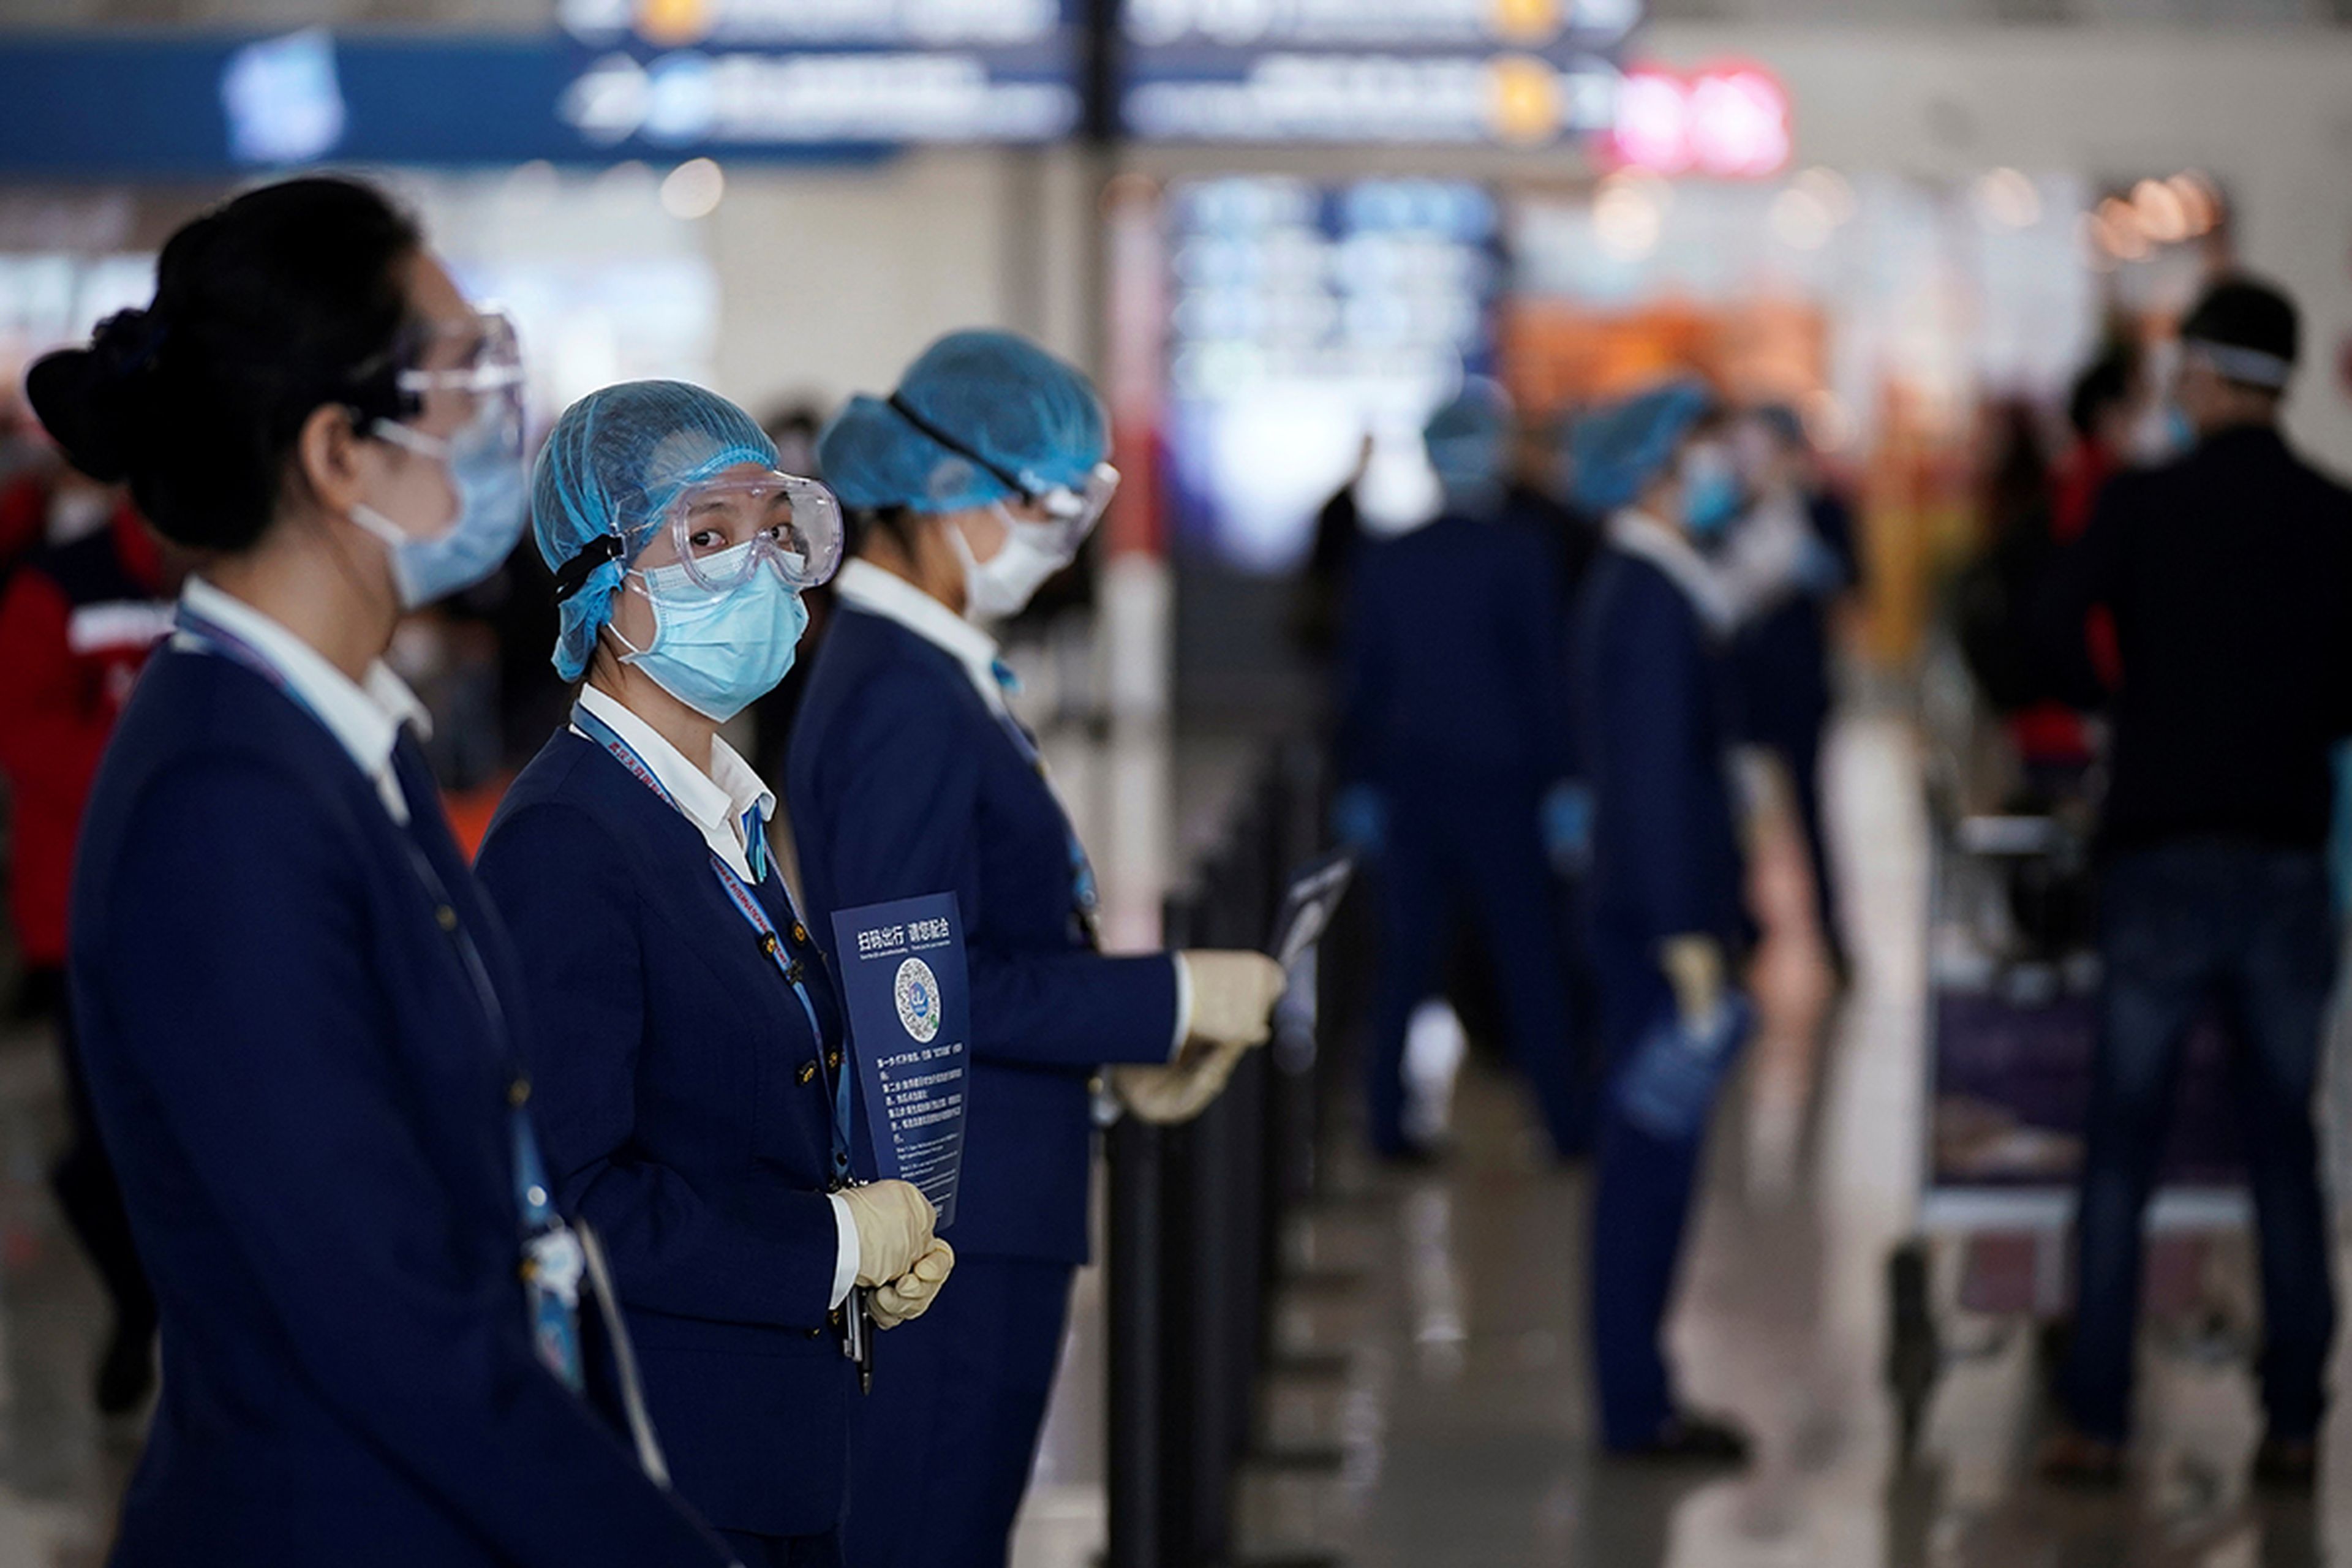 El staff del aeropuerto comprueban la salud a los pasajeros mediante un código QR.